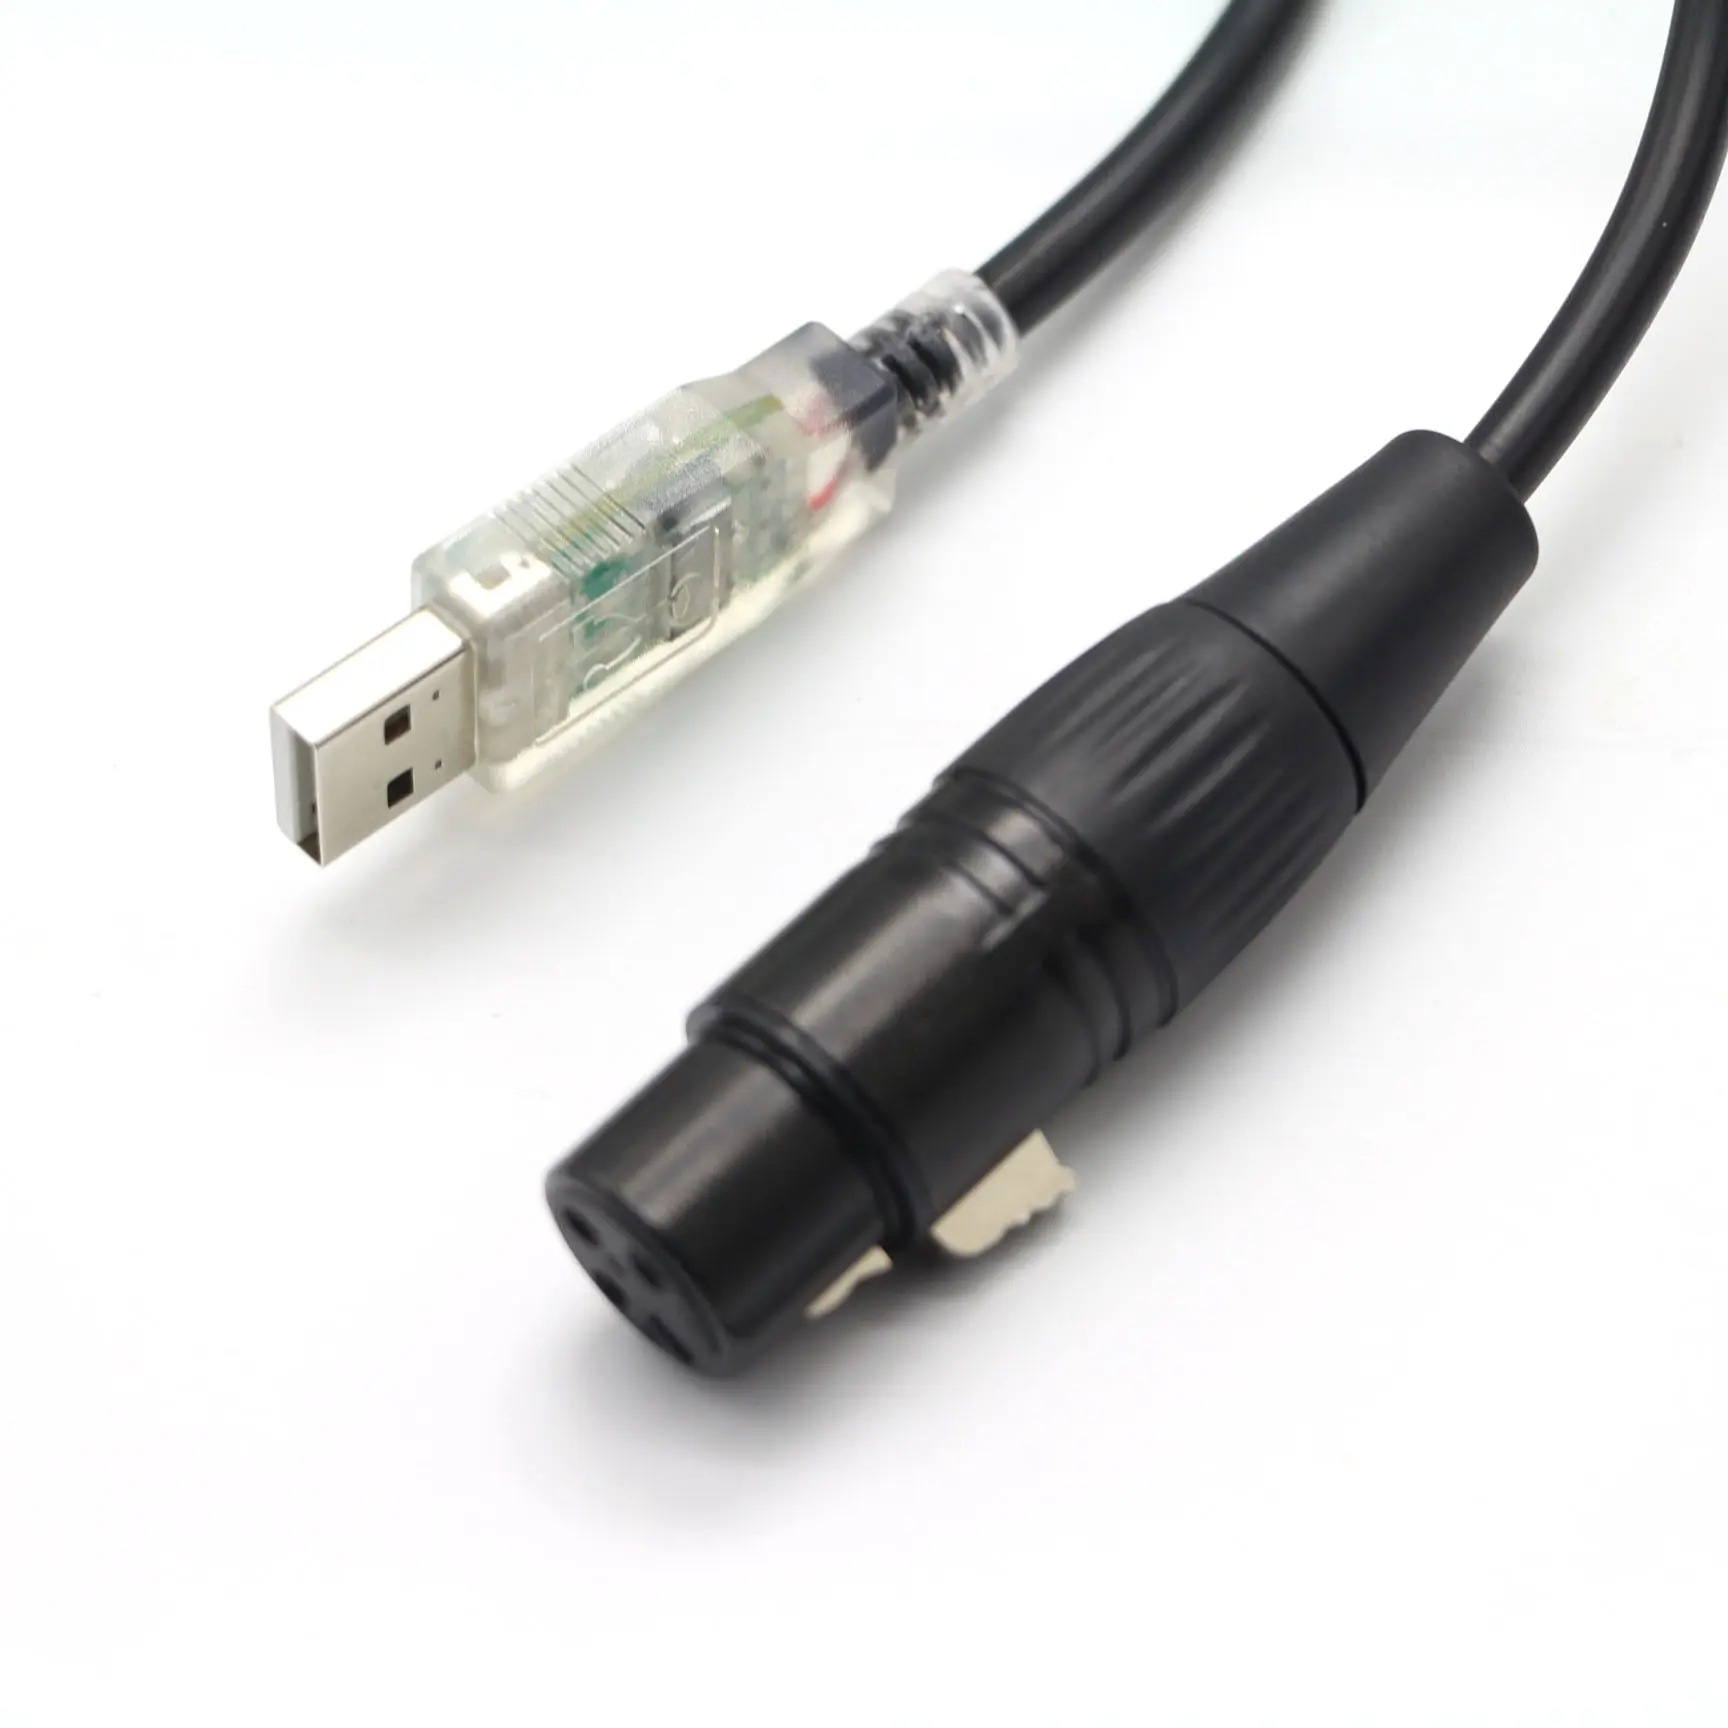 USB-кабель для микрофона, переходник для микрофона с разъемом XLR на USB для микрофонов или записи караоке, 10 футов (USB на XLR)